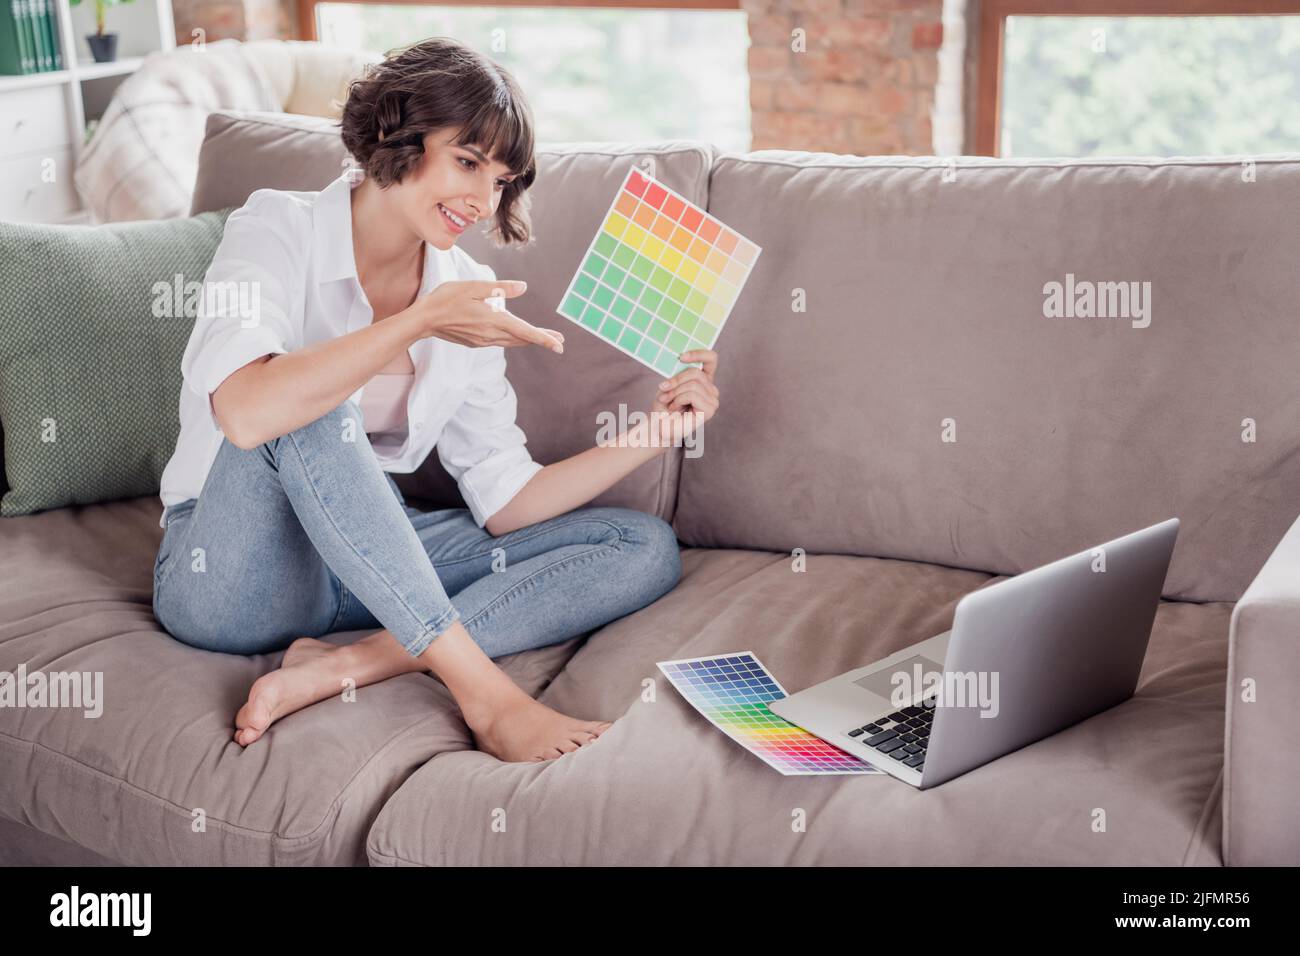 Foto in voller Länge in Körpergröße, weibliche Grafikdesignerin, die einen Laptop verwendet und Farbpaletten auf dem Videoanschluss zeigt Stockfoto